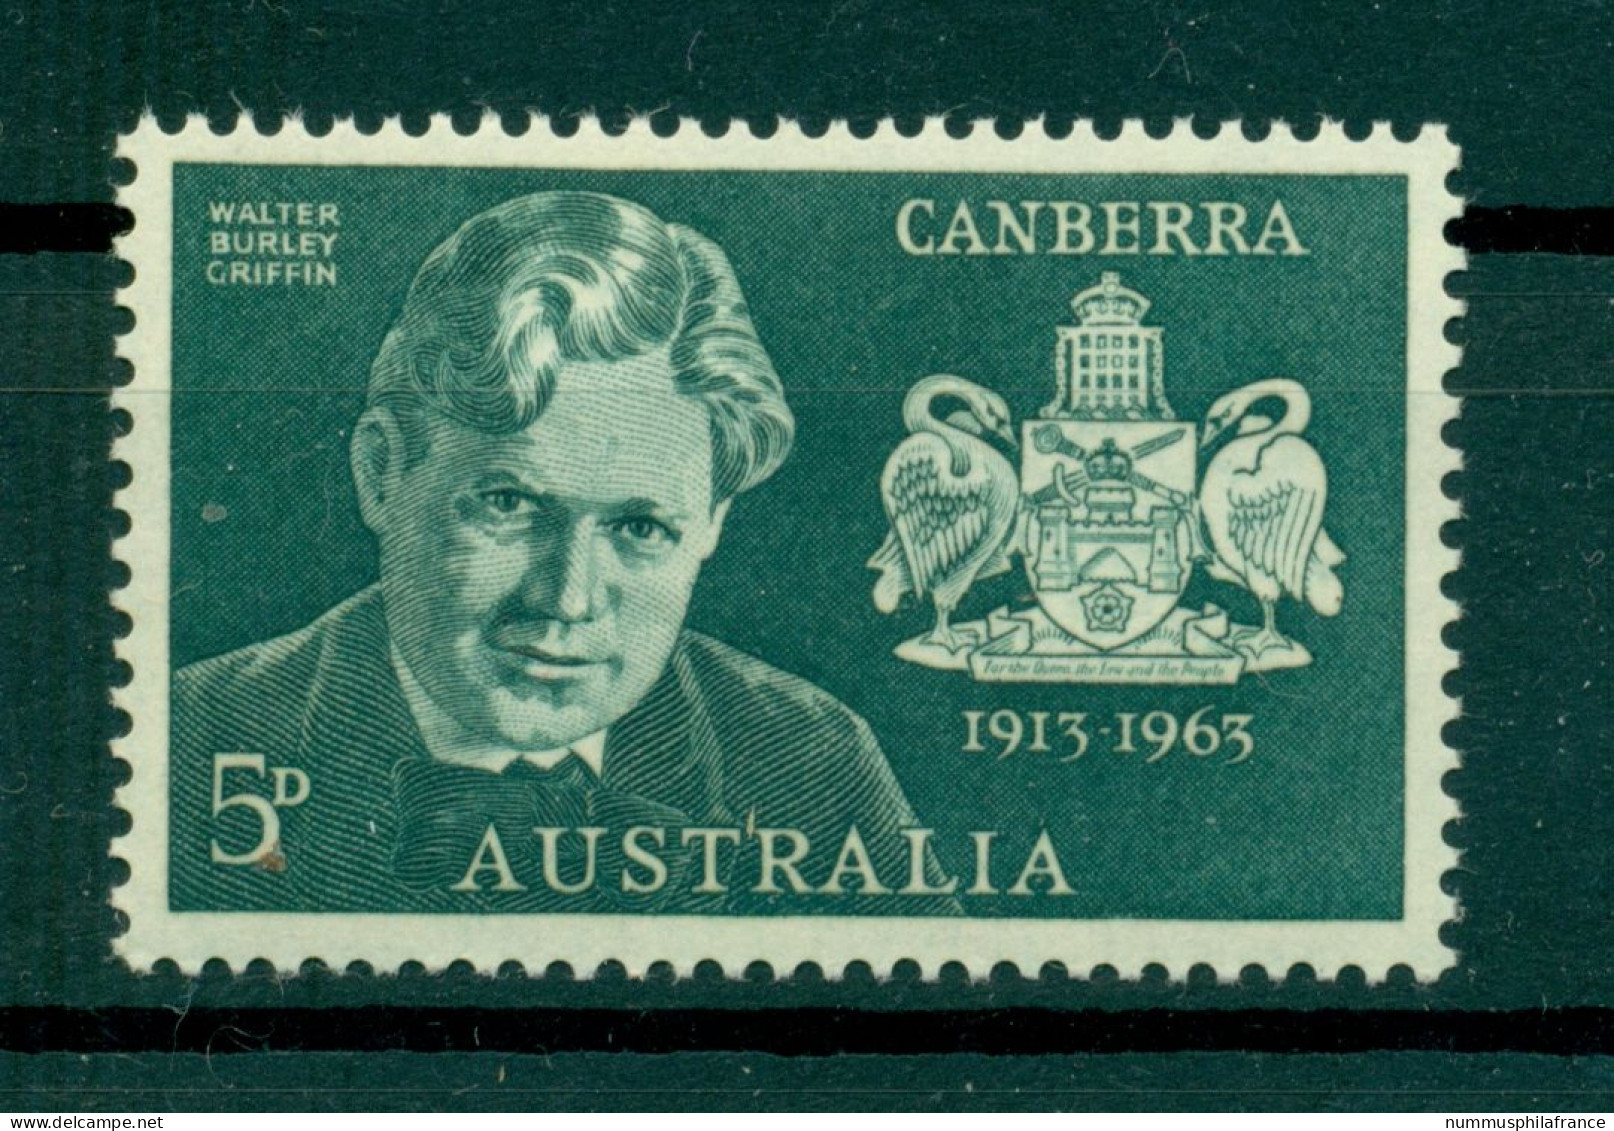 Australie 1963 - Y & T N. 286 - Canberra (Michel N. 325) - Ungebraucht